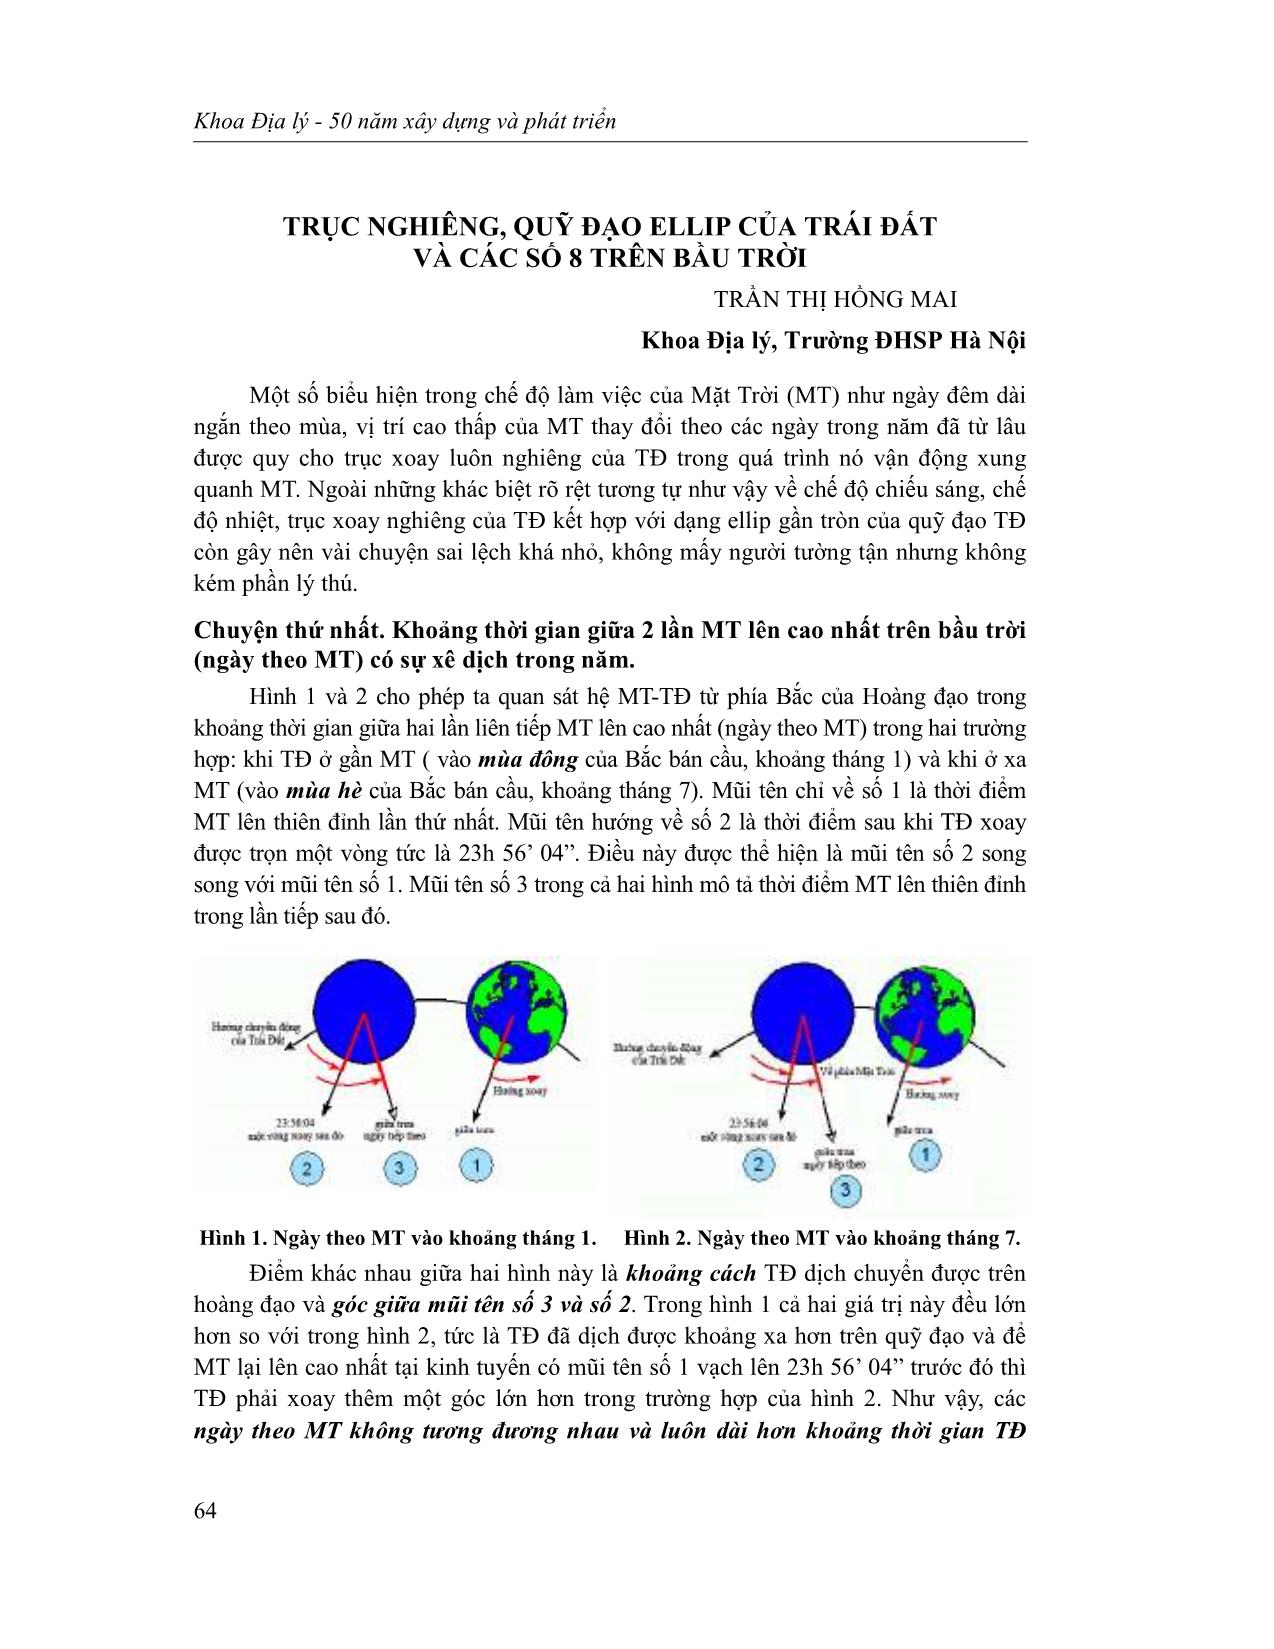 Trục nghiêng, quỹ đạo ellip của trái đất và các số 8 trên bầu trời trang 1